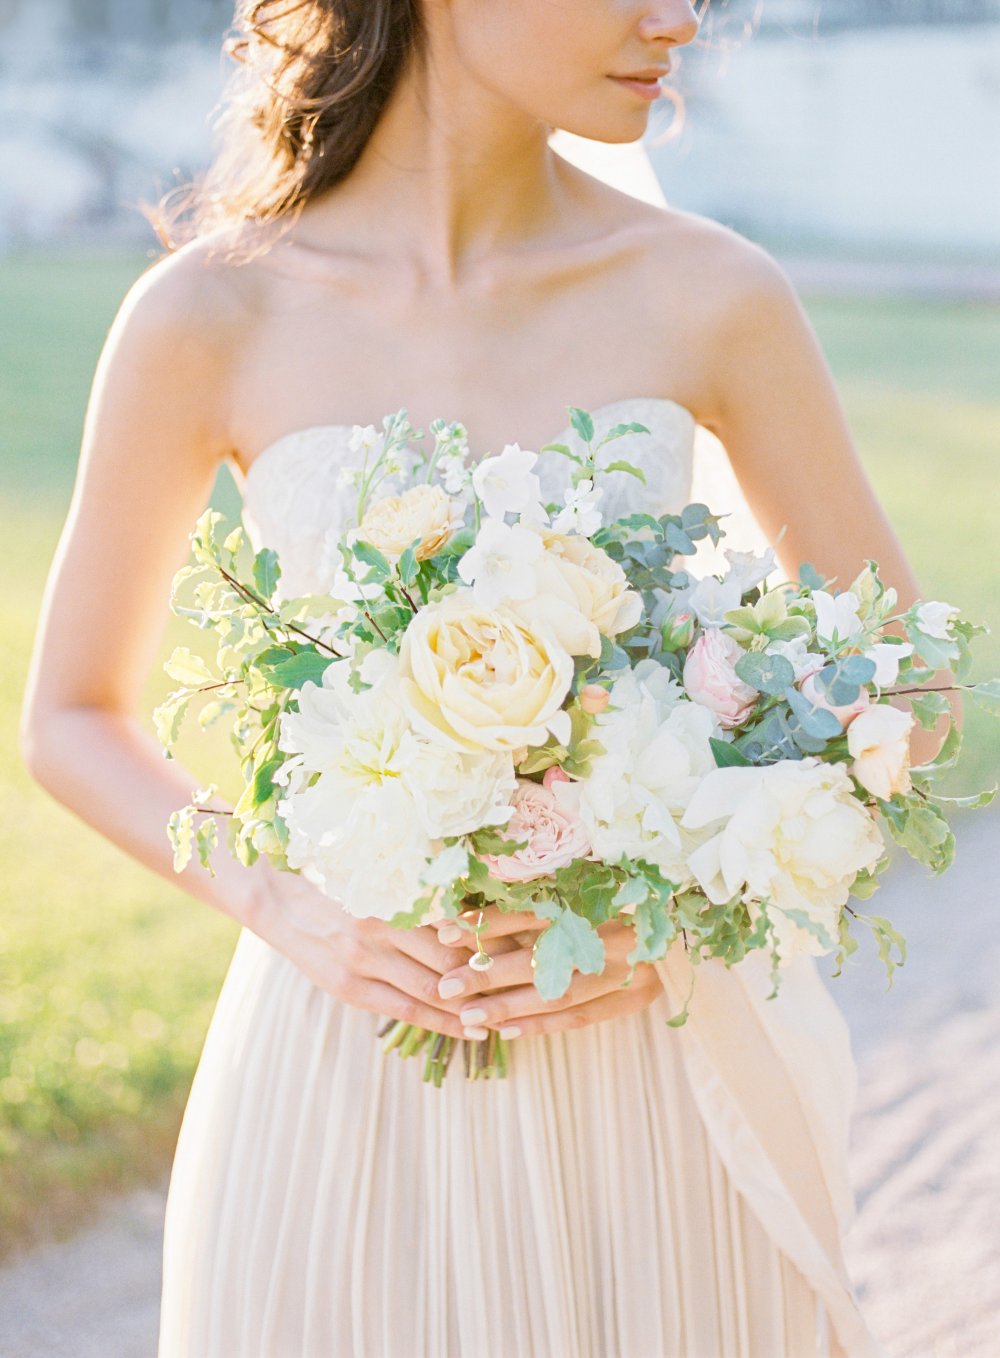 нежный и свежий букет невесты в сливочных и пудрово-розовых тонах с мятной зеленью, белыми пионами и пионовидными розами